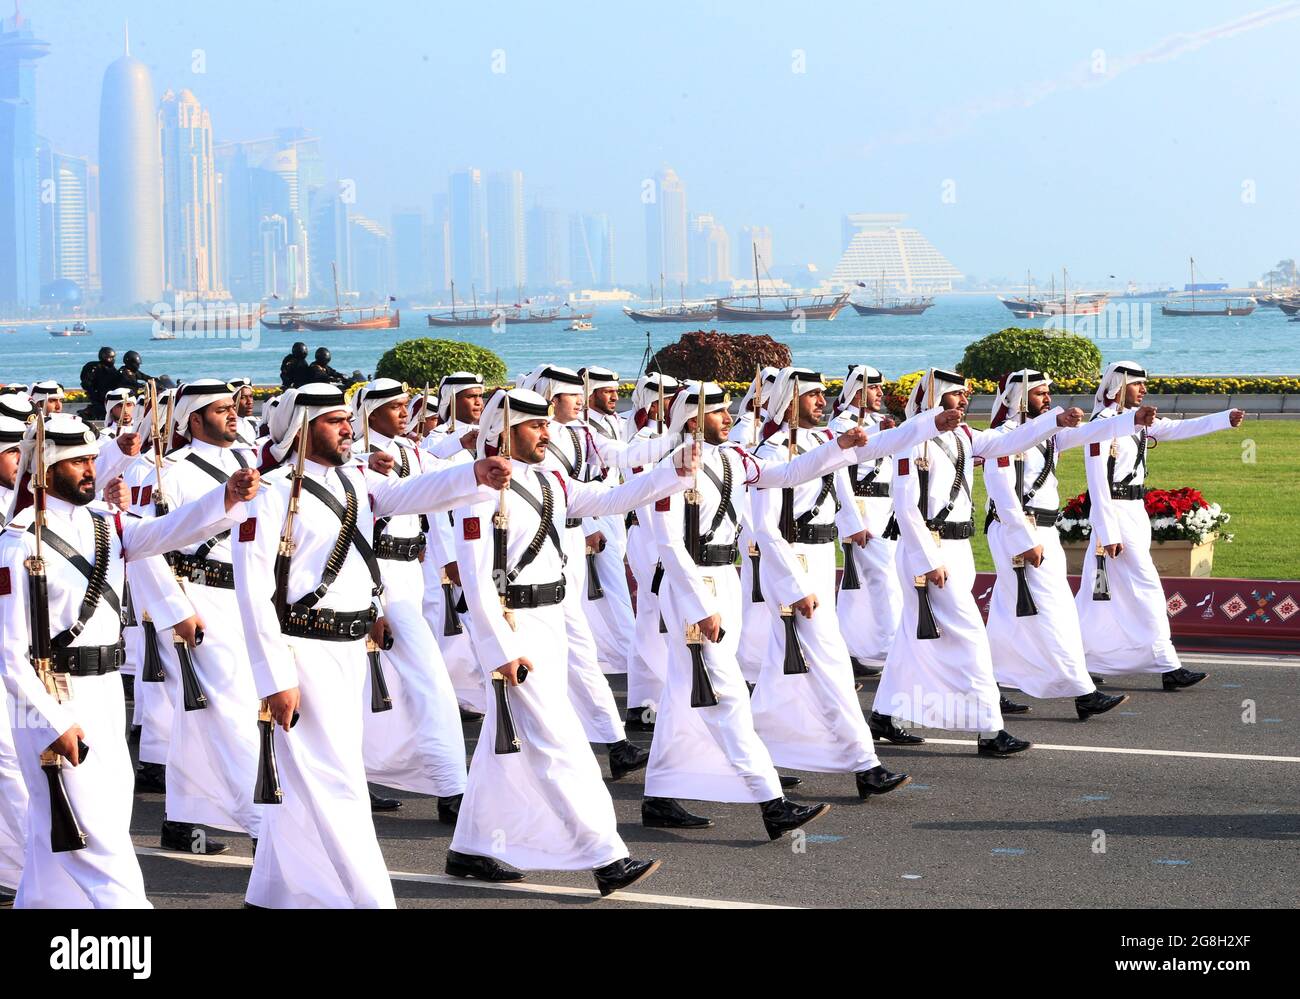 Qatar national day celebration Stock Photo Alamy